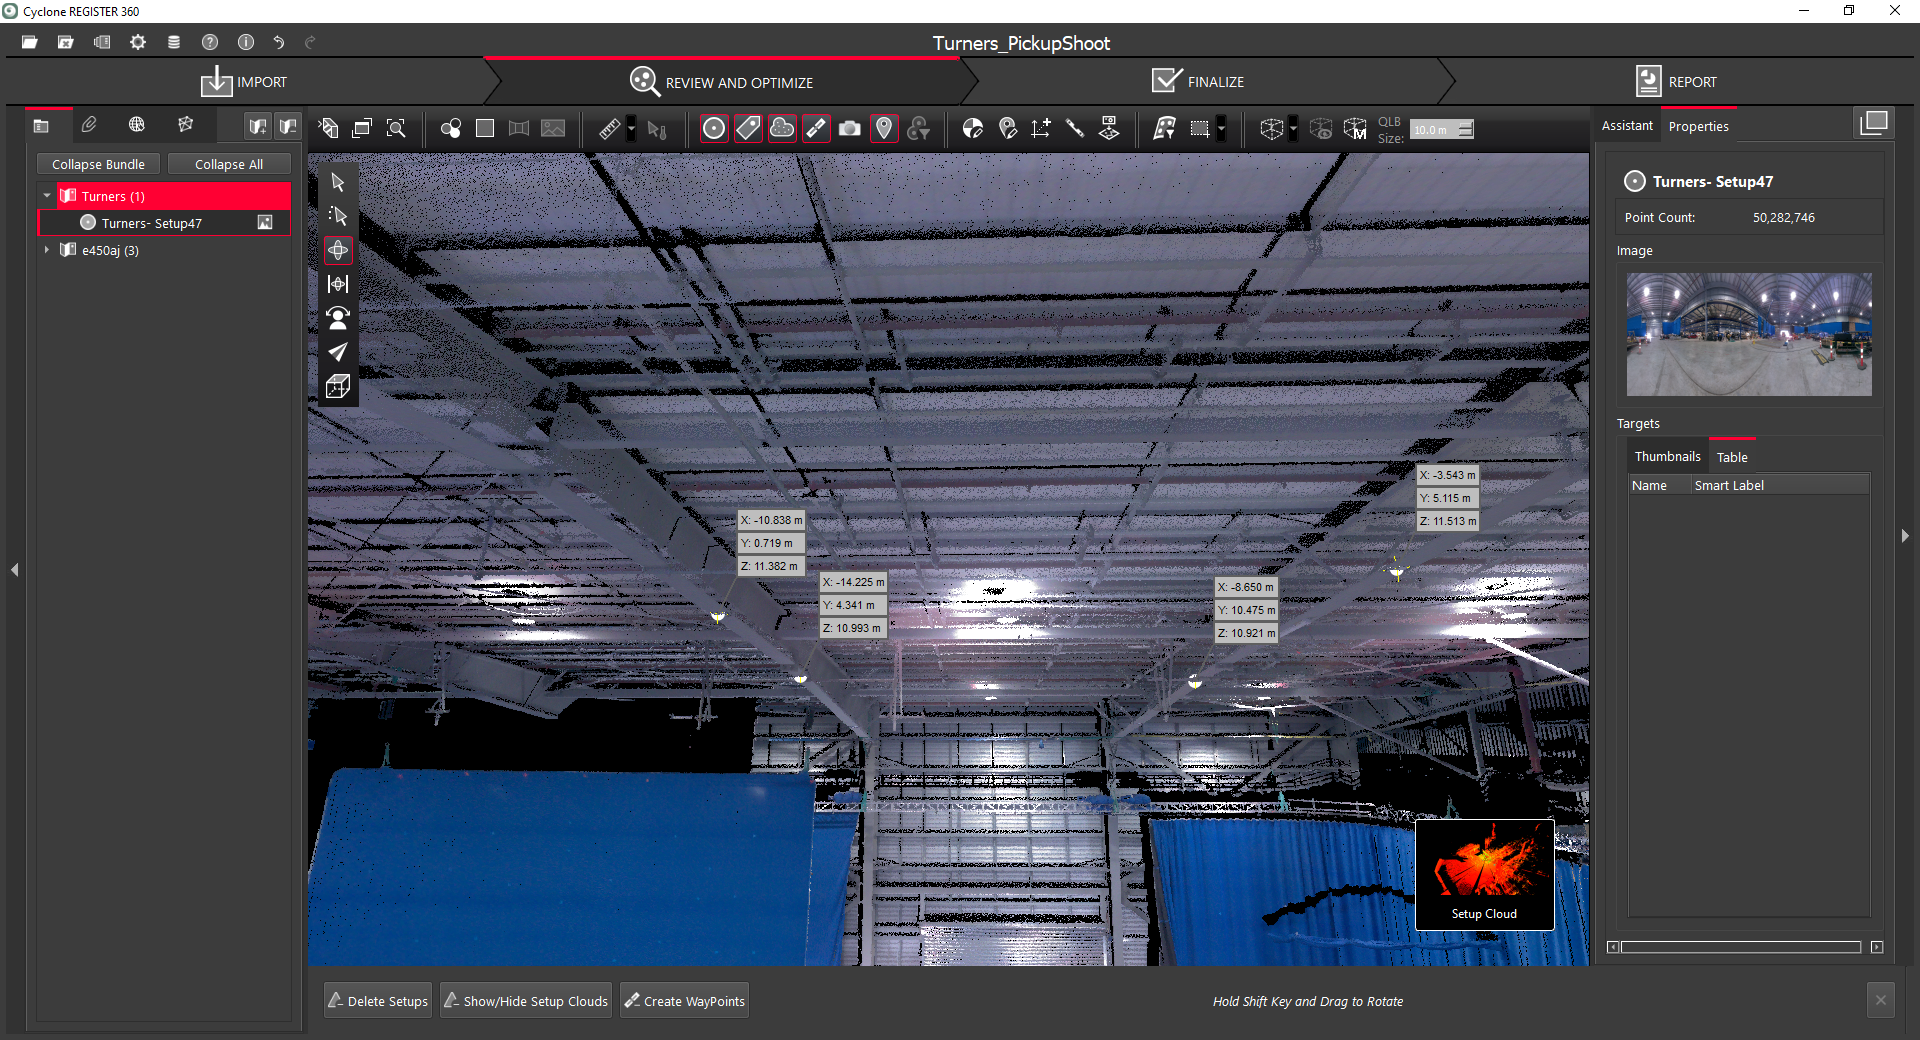 scansione 3D di un set cinematografico all'interno del software Cyclone REGISTER 360